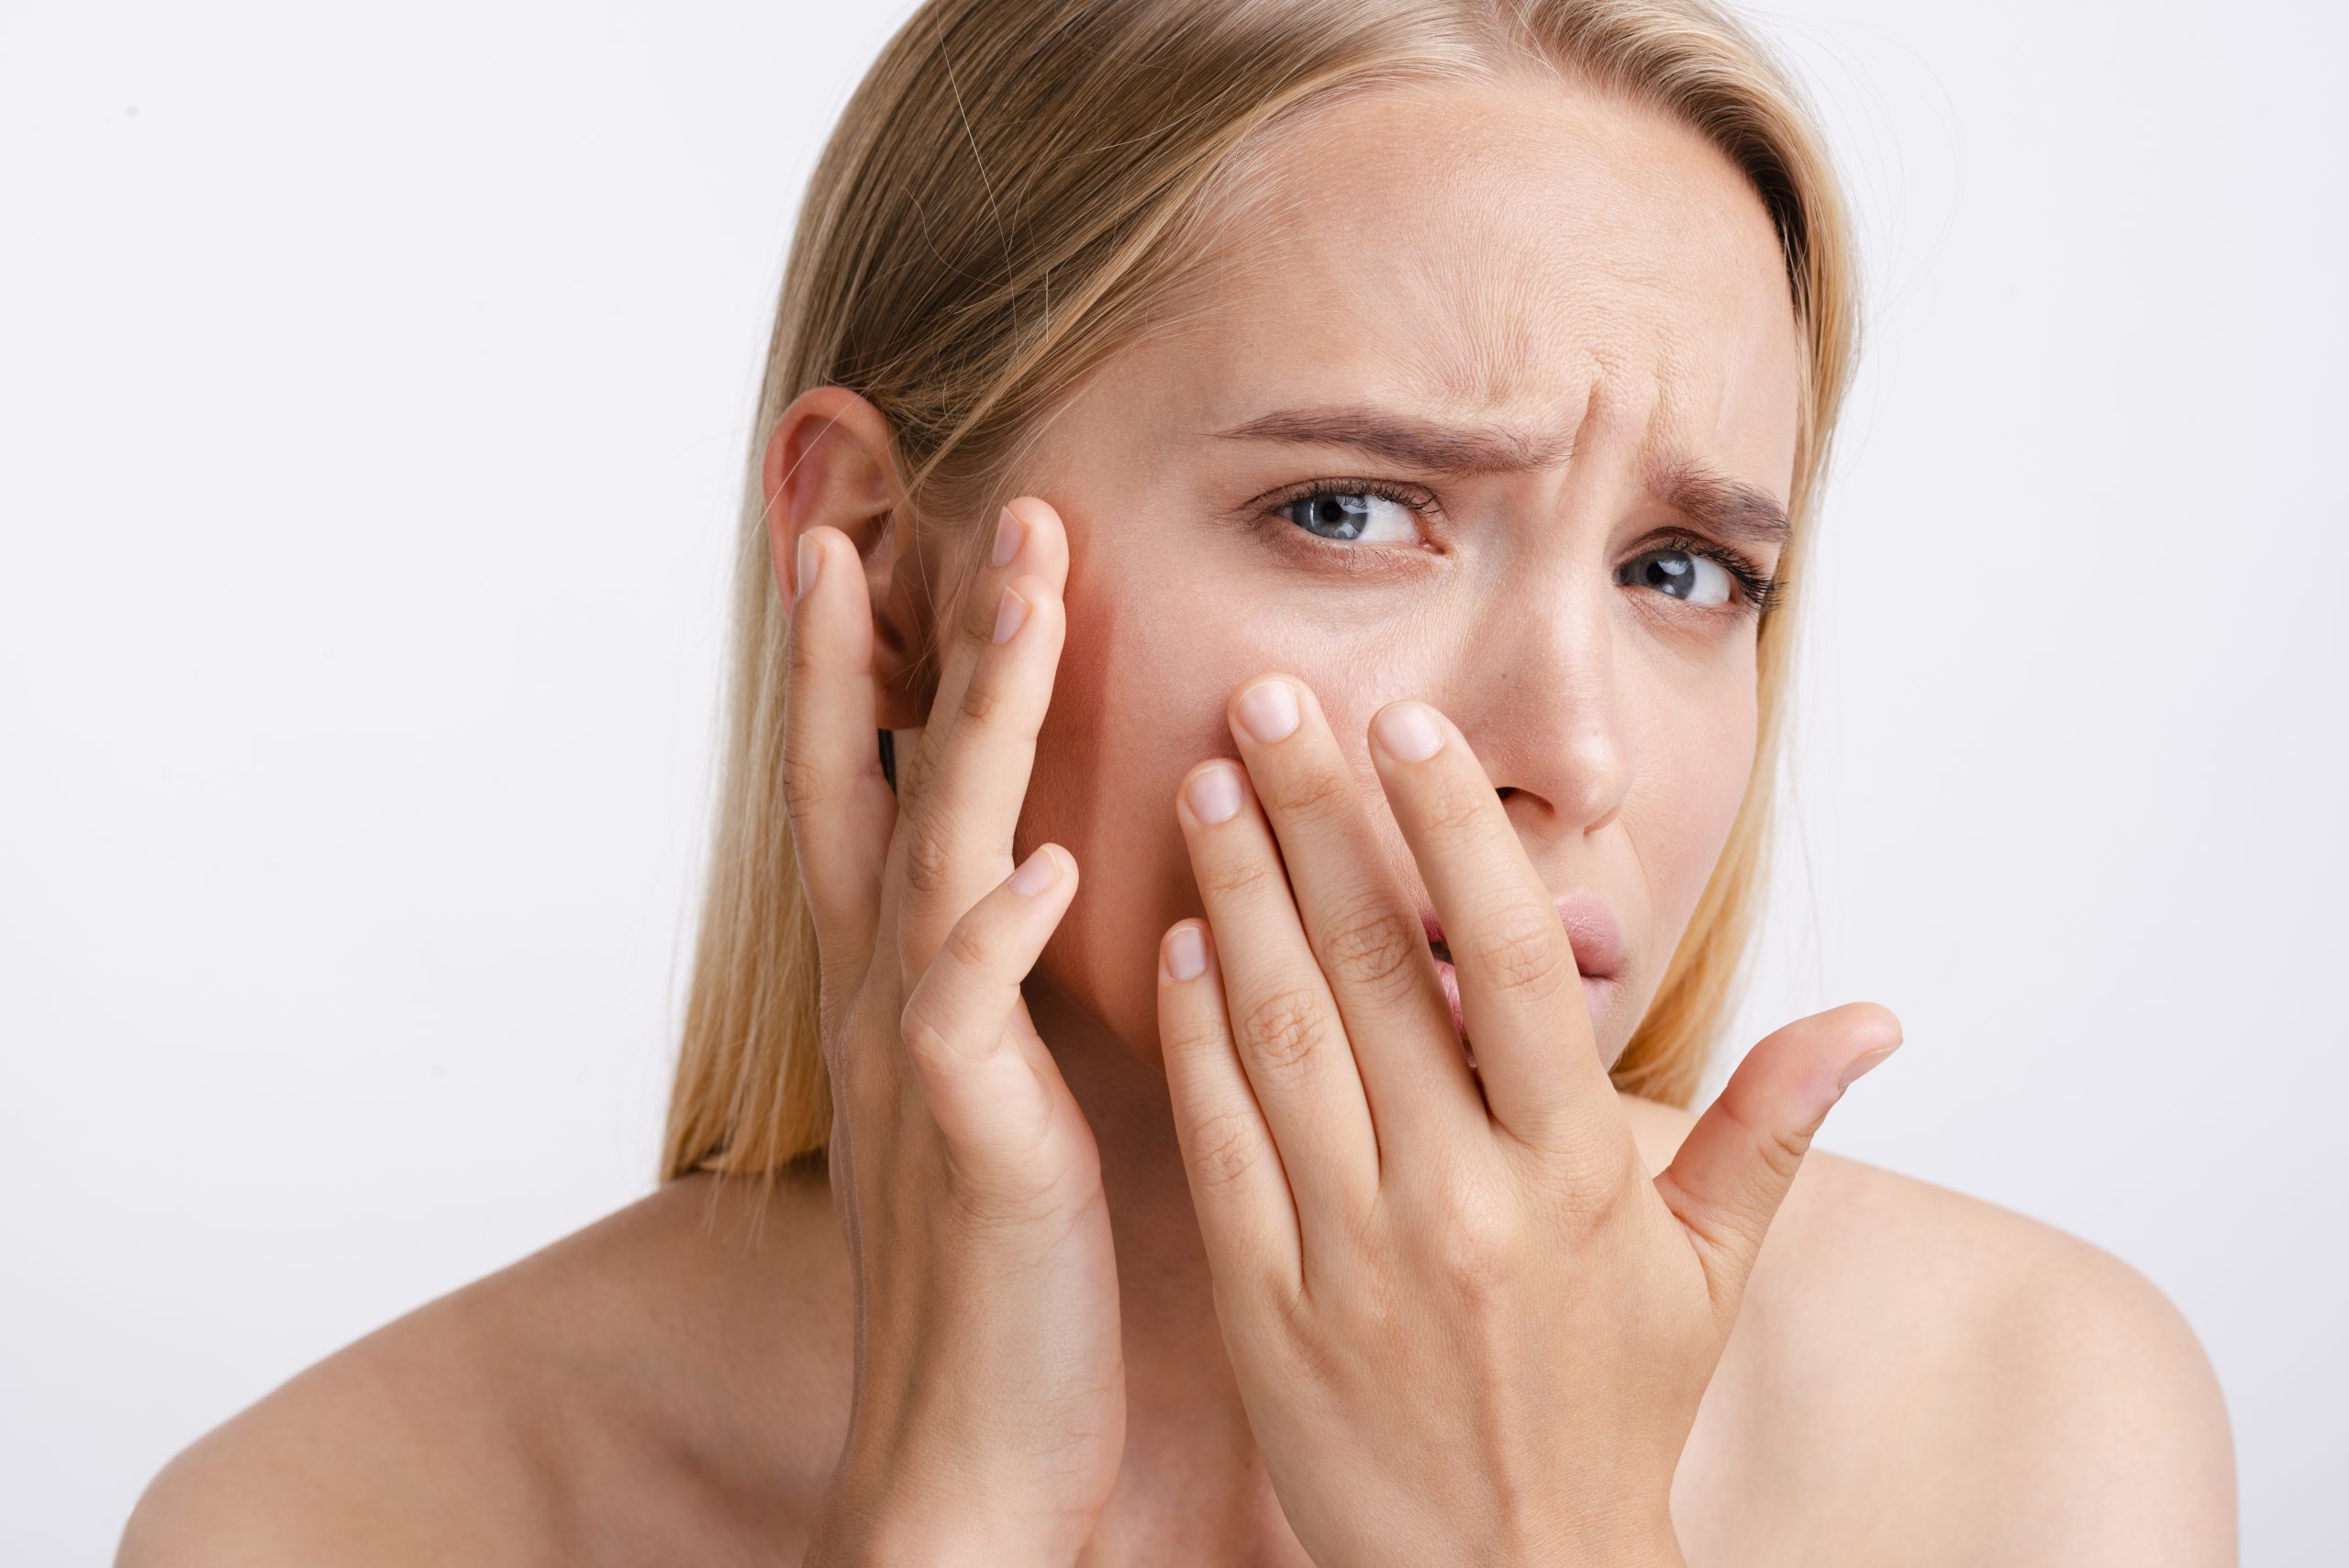 Jornal da Franca – Cellulite sur le visage ?  Comprendre comment une infection bactérienne présente des risques pour la santé